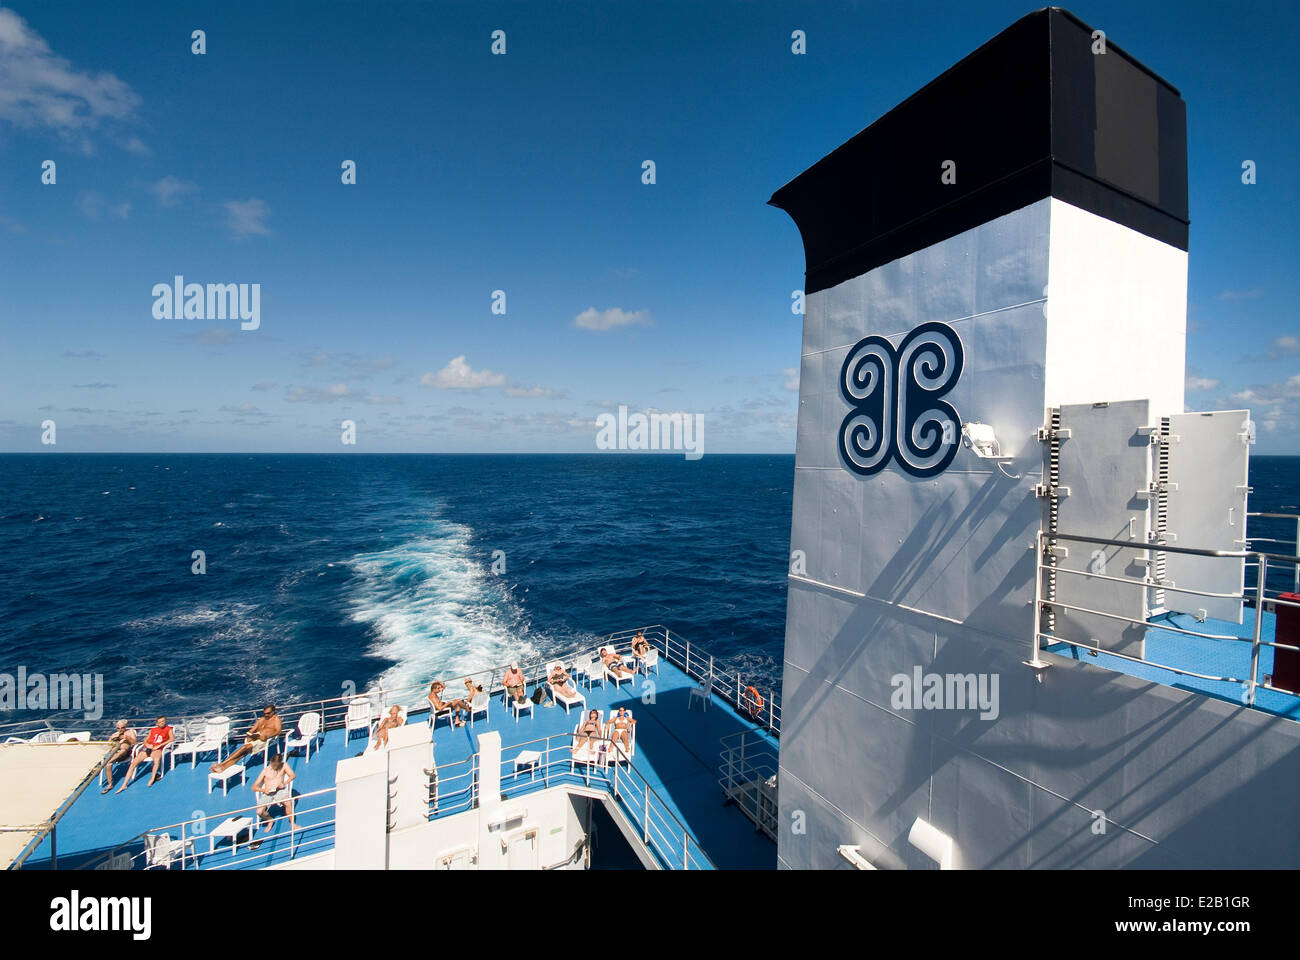 Francia, Polinesia francese, crociera a bordo di una nave mercantile Aranui 3, la barca a vela sul'Oceano Pacifico legato per le Marchesi, Foto Stock